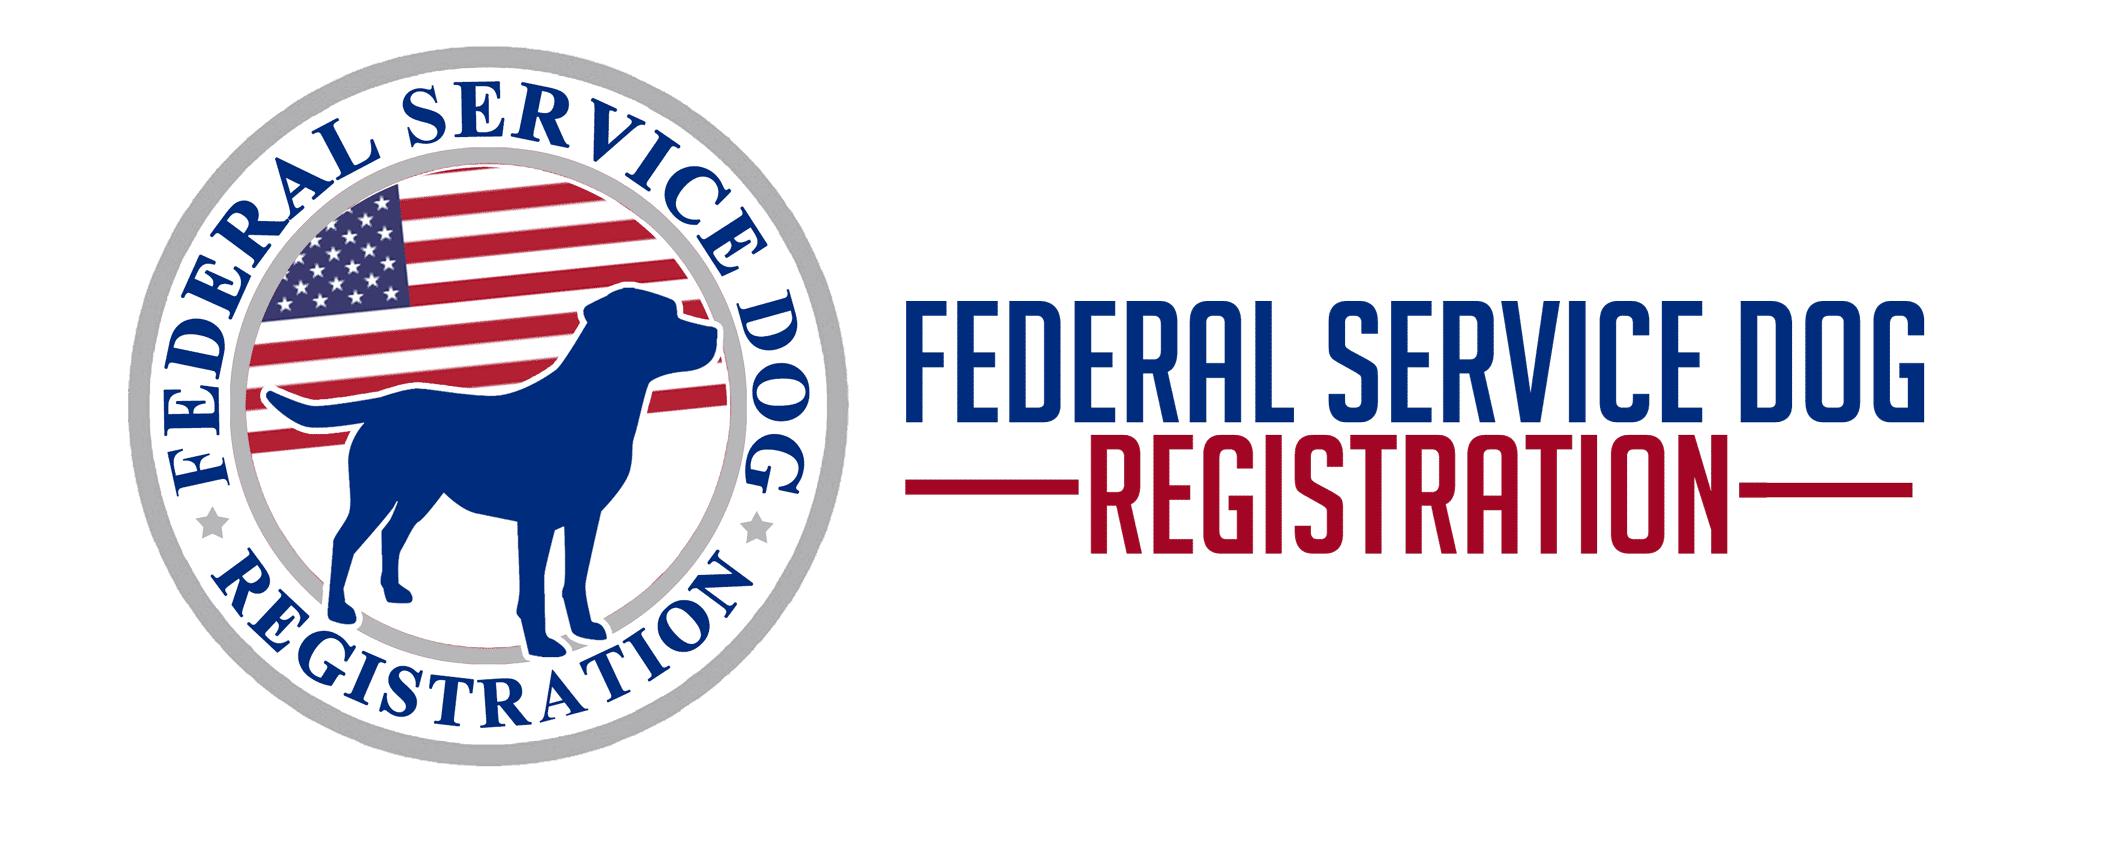 FREE SERVICE DOG REGISTRATION - Federal Service Dog Registration